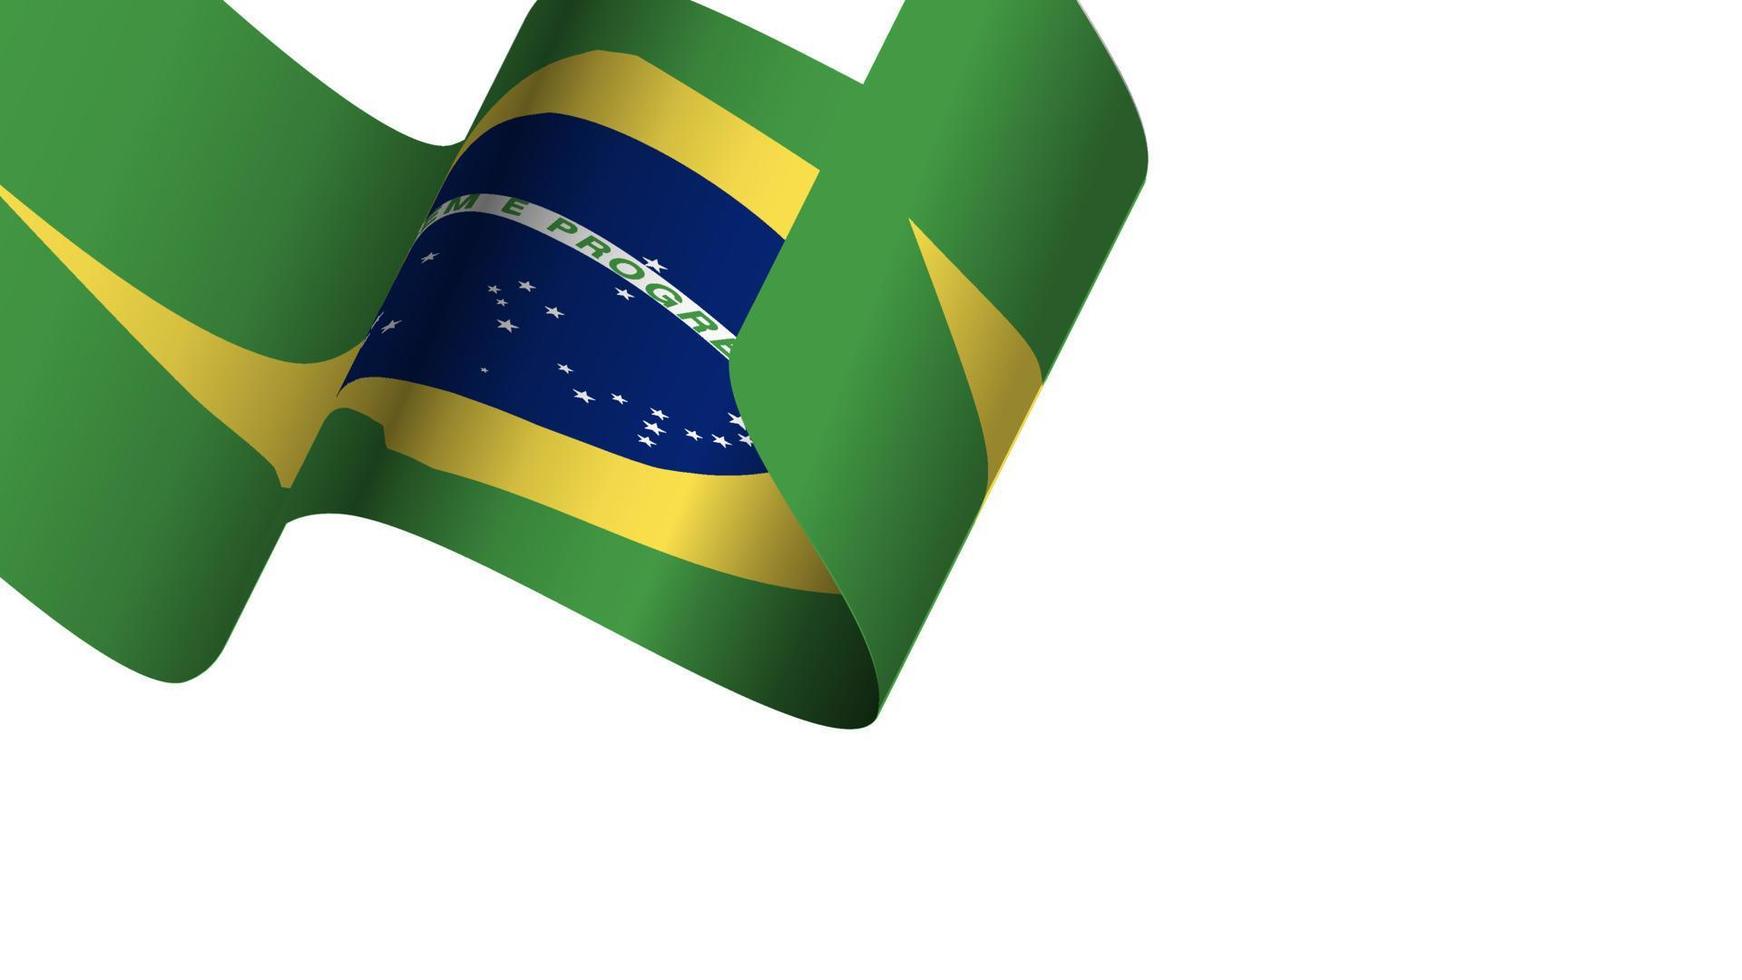 drapeau du brésil wave motion vector illustration background